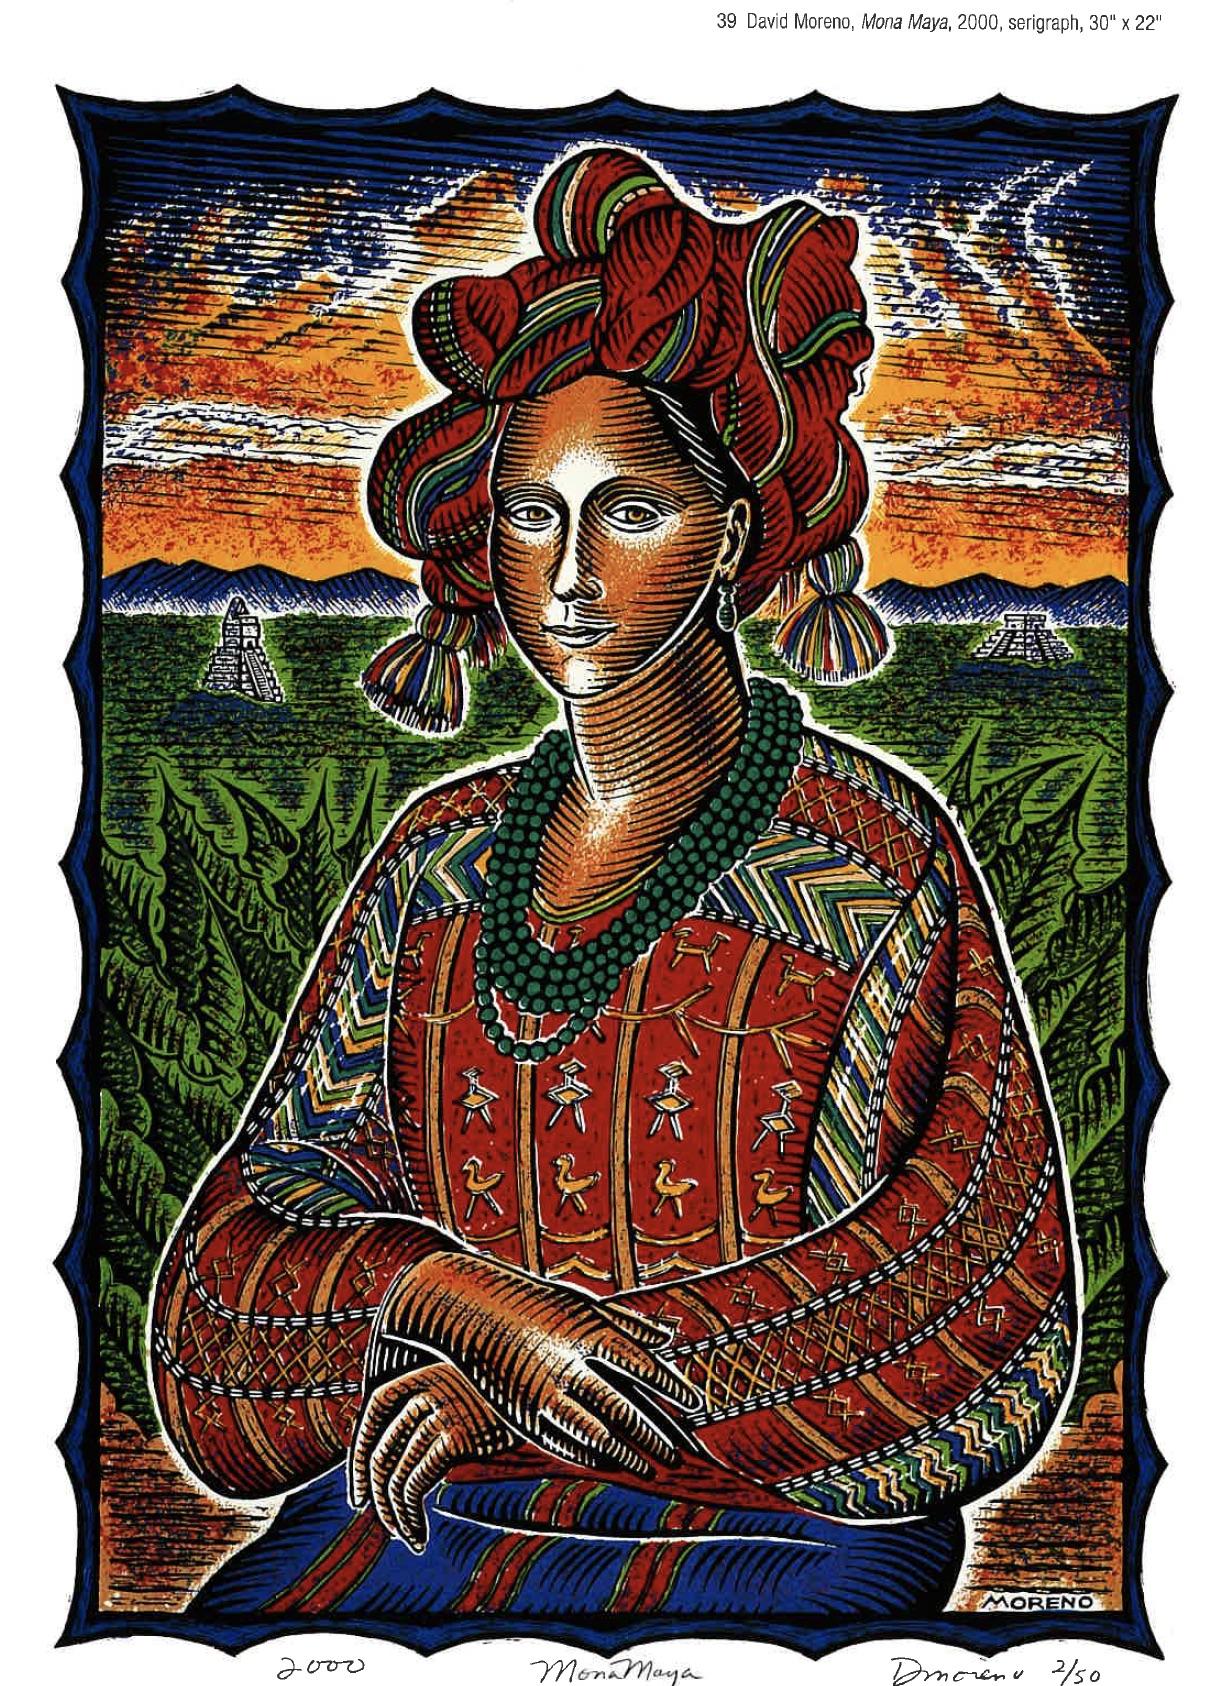 David Moreno, Mona Maya, 2000, serigraph, 30” x 22”